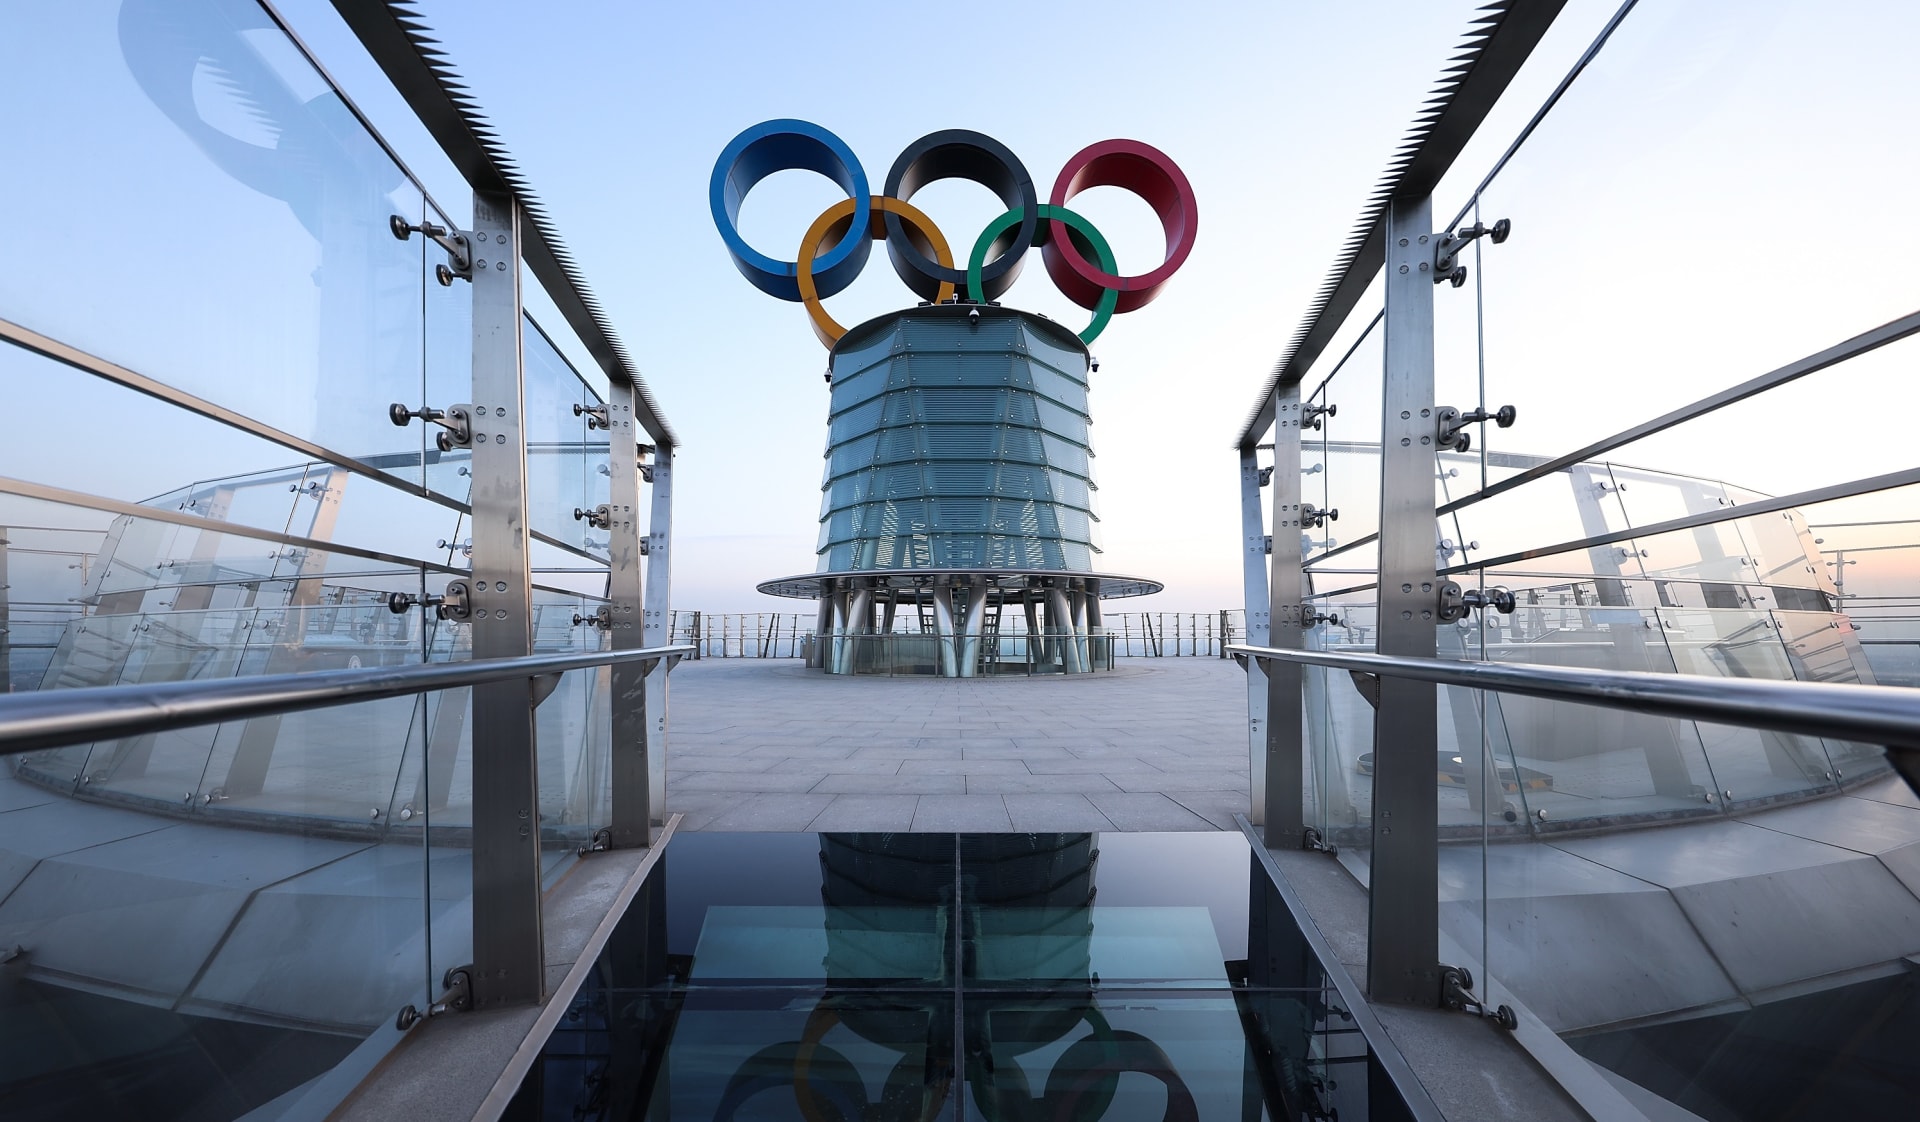 Premiér Petr Fiala (ODS) potvrdil, že na zimní olympijské hry v Pekingu nepojede nikdo z členů české vlády.